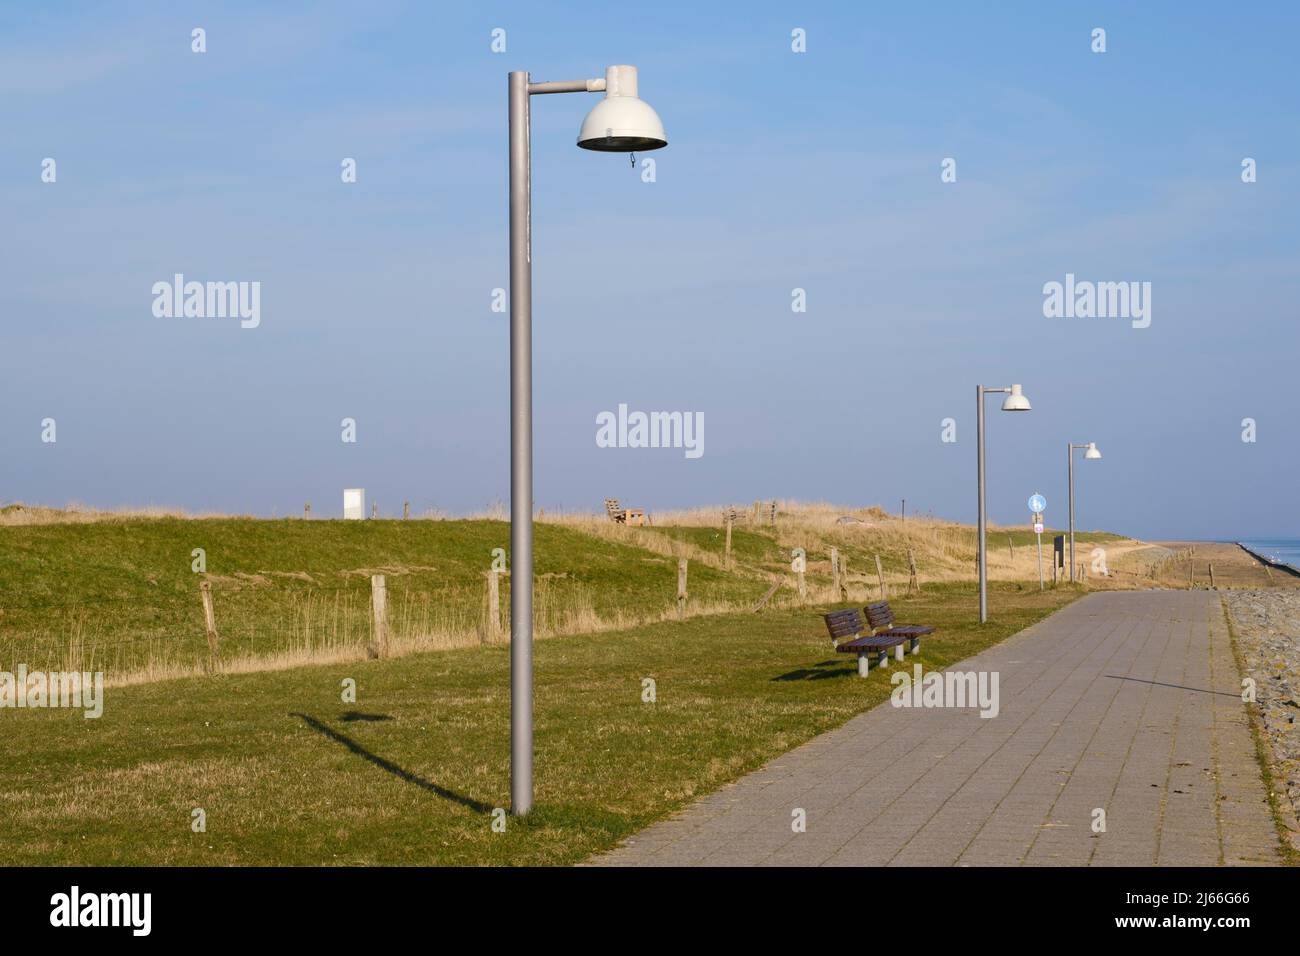 Promenade am Deich, Juist, Toowerland, Ostfriesische Insel, Ostfriesland, Nordsee, Niedersachsen, Allemagne Banque D'Images